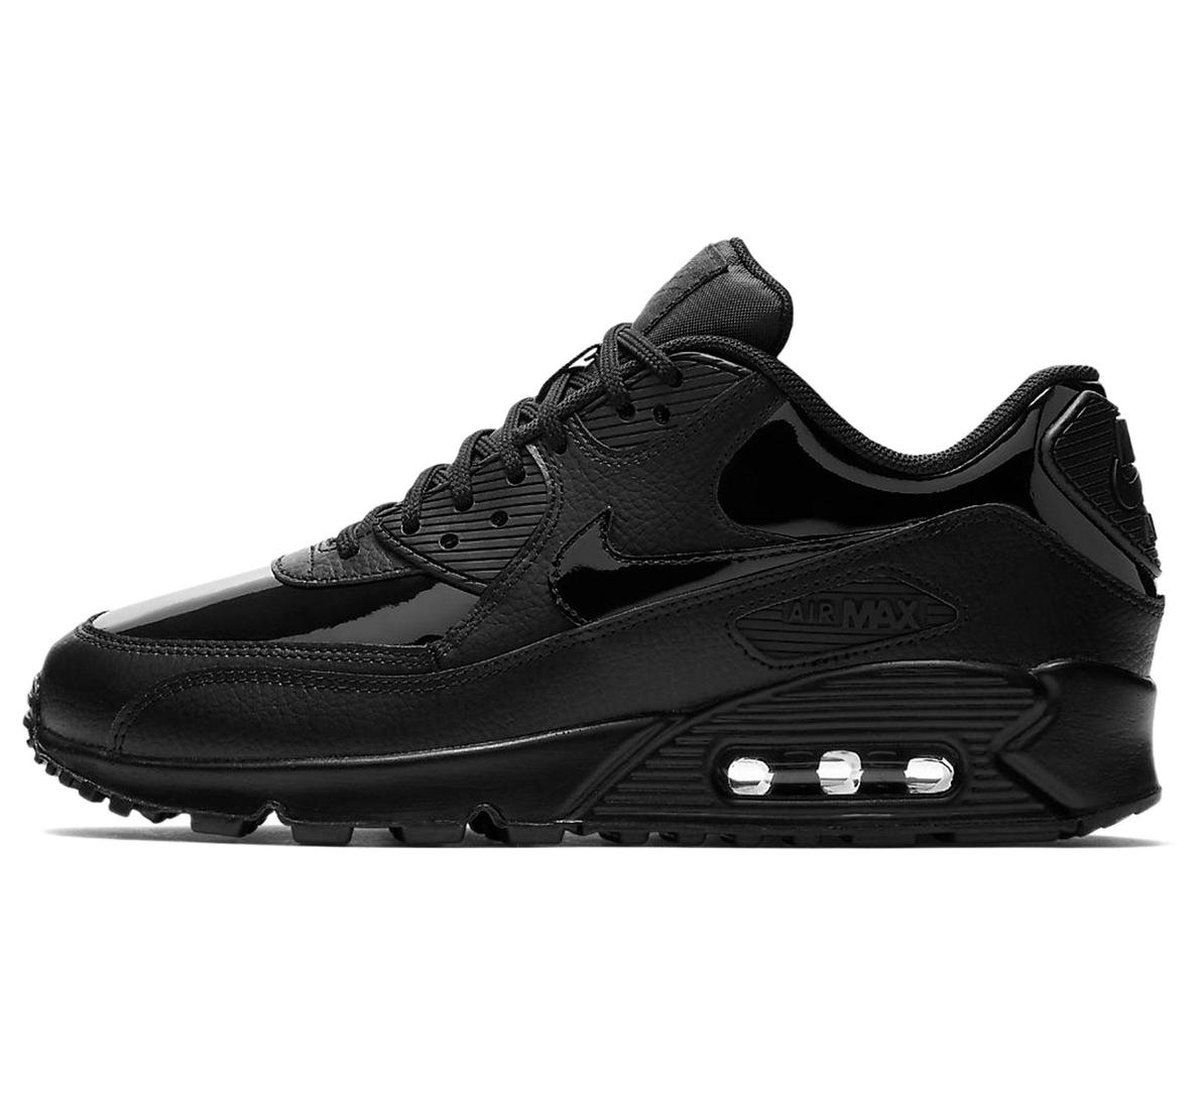 bol.com | Nike Air Max 90 Leather Sneakers - Maat 38 - Vrouwen - zwart